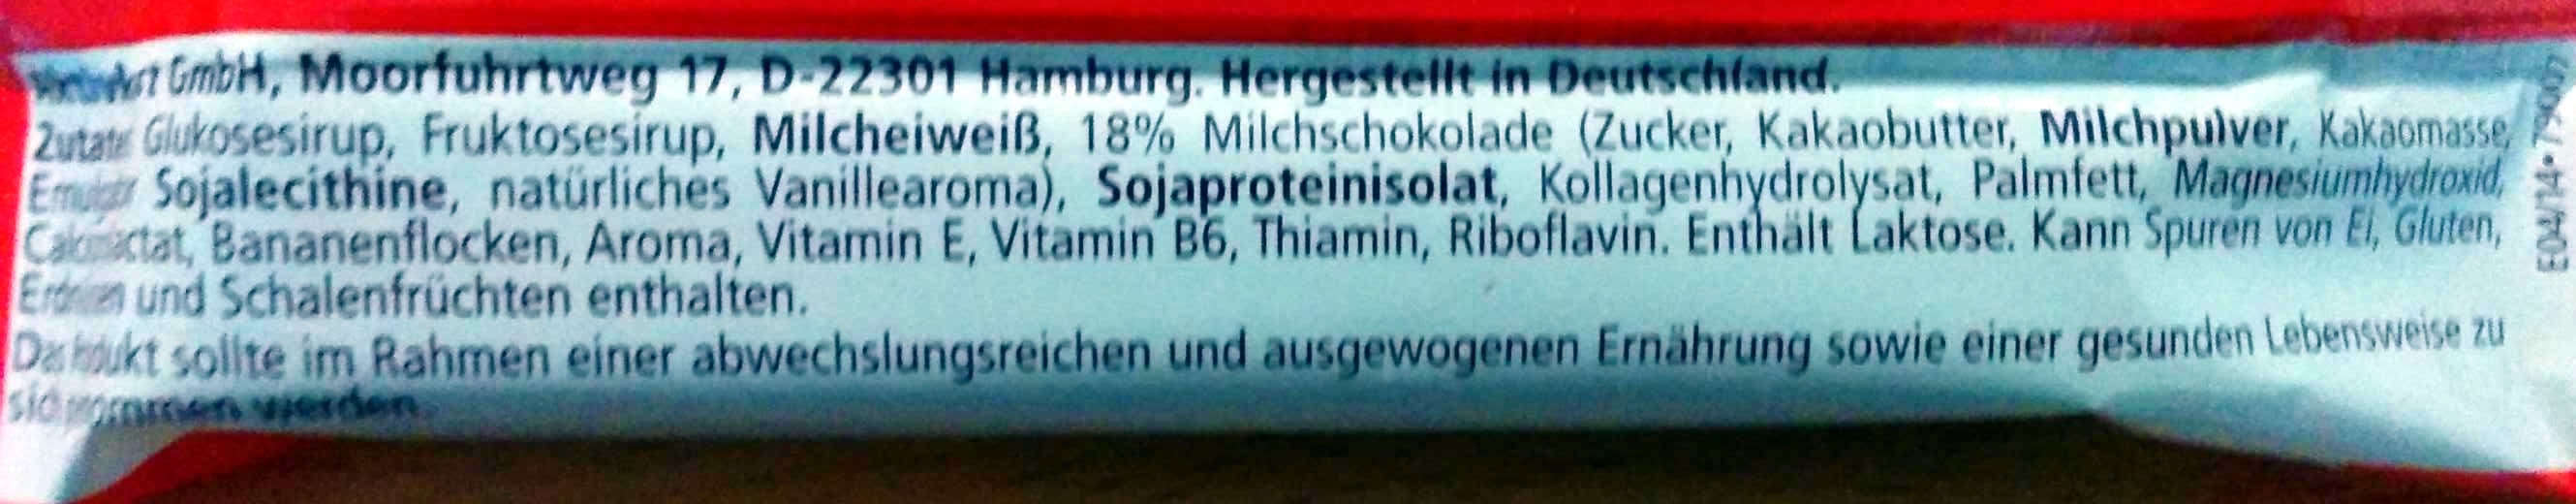 Muscle Protein Bar 27% - Ingredients - de